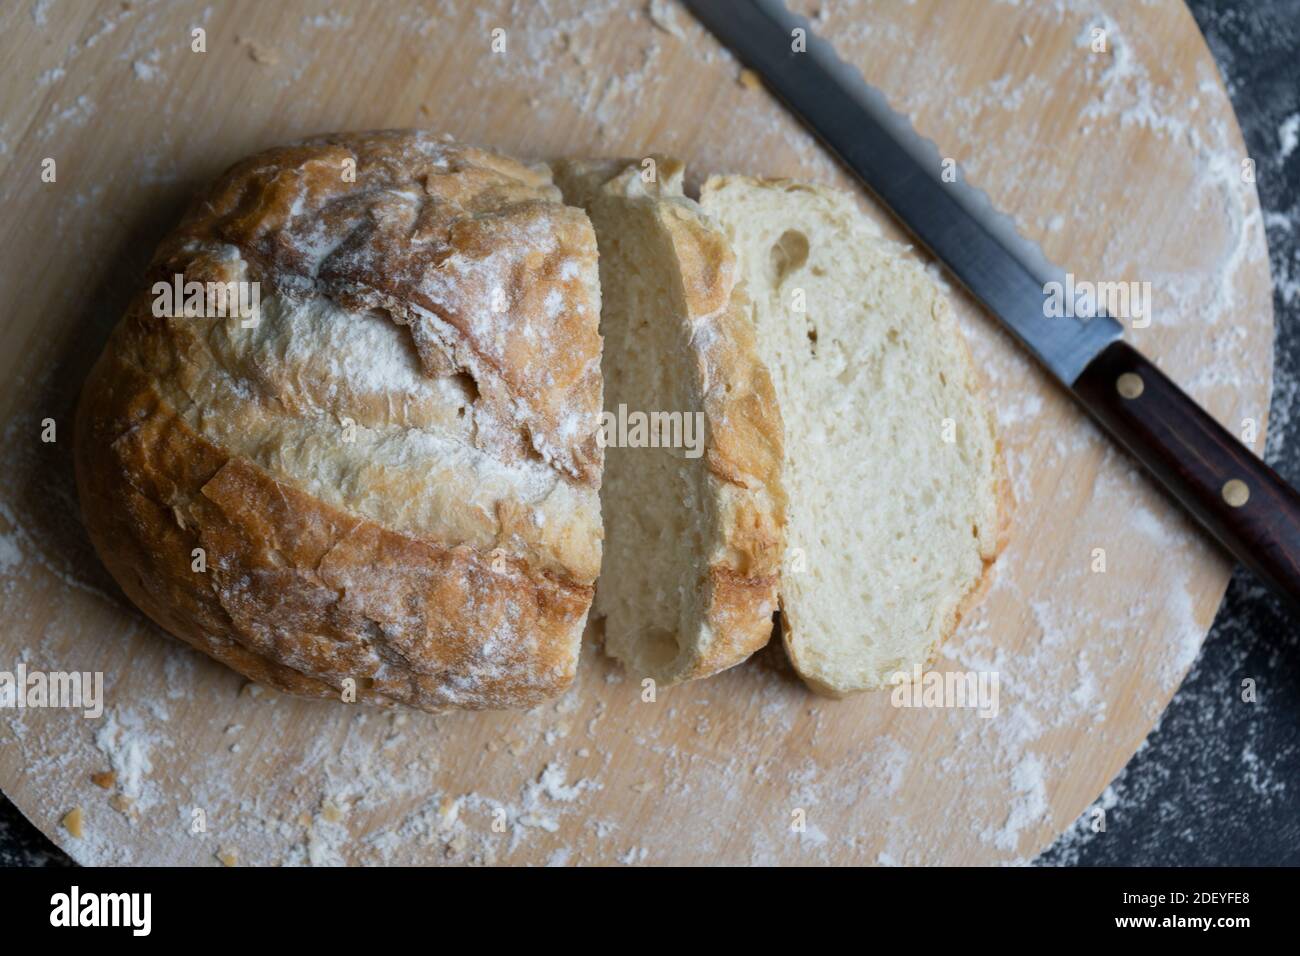 Pan de trigo en rebanadas con harina y cuchillo sobre tabla de madera.panadería rústica, concepto de comida saludable . Foto de stock